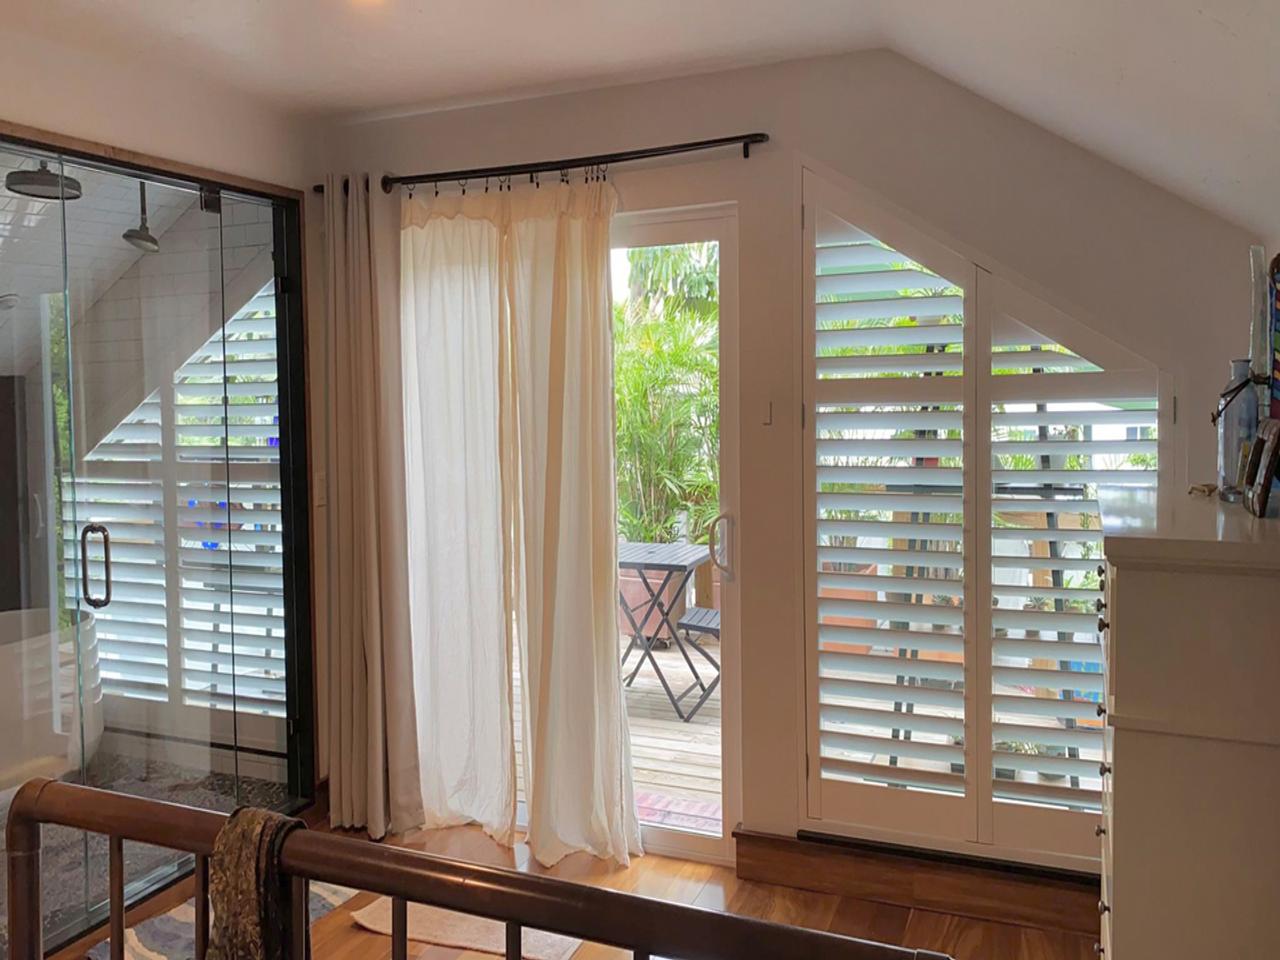 Louverwood shutters in bedroom on slant topped window